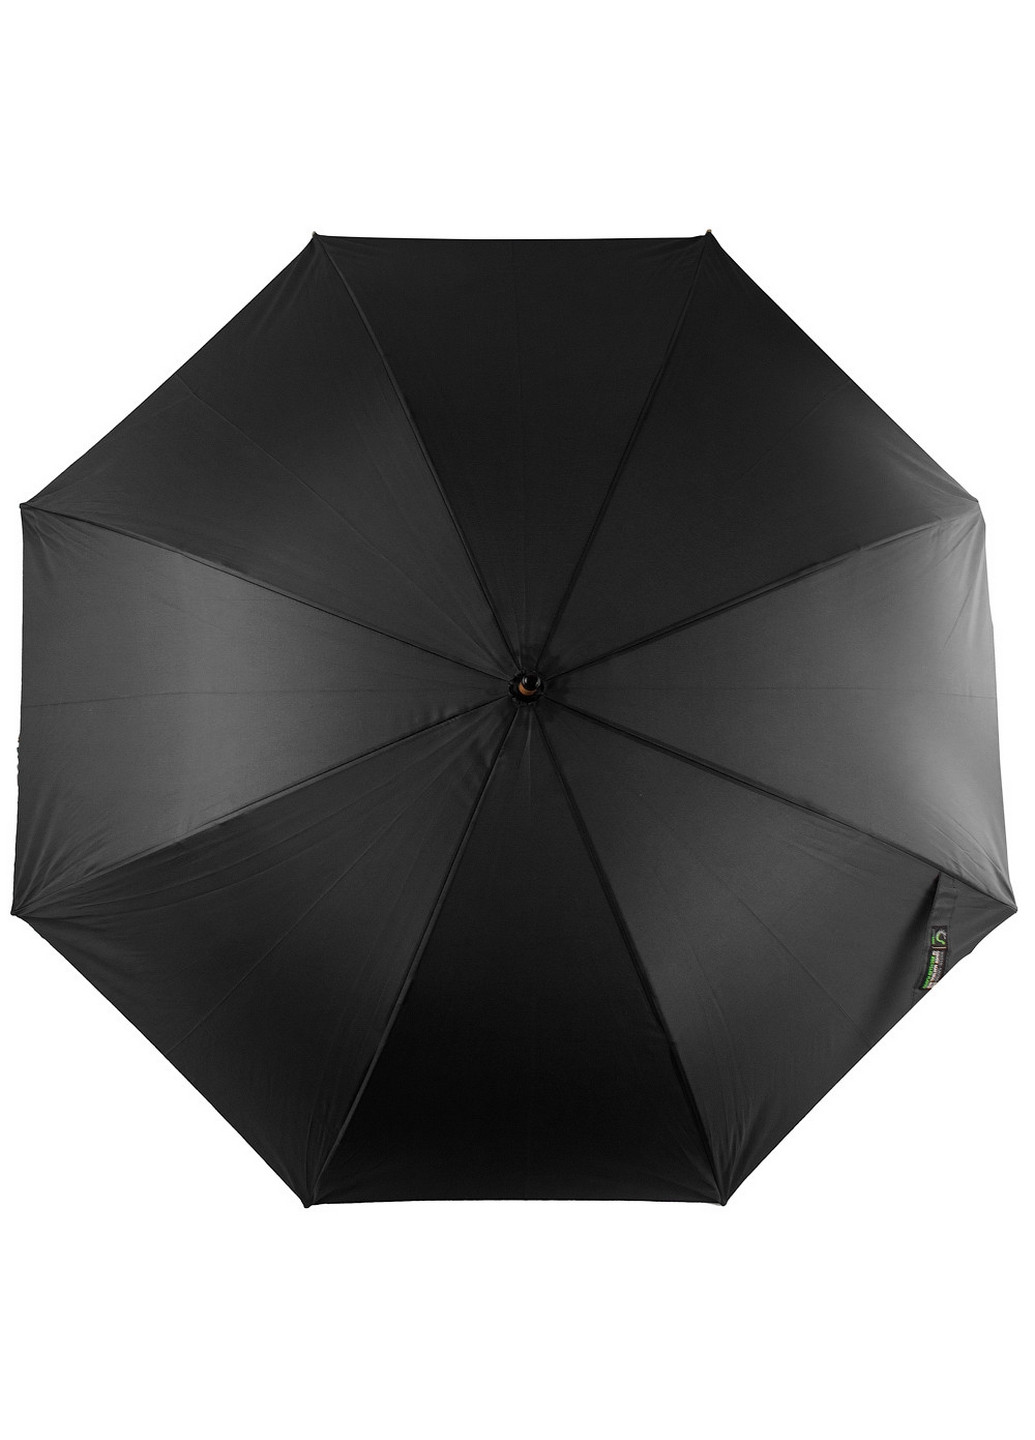 Мужской зонт-трость полуавтомат 109 см FARE (260330362)